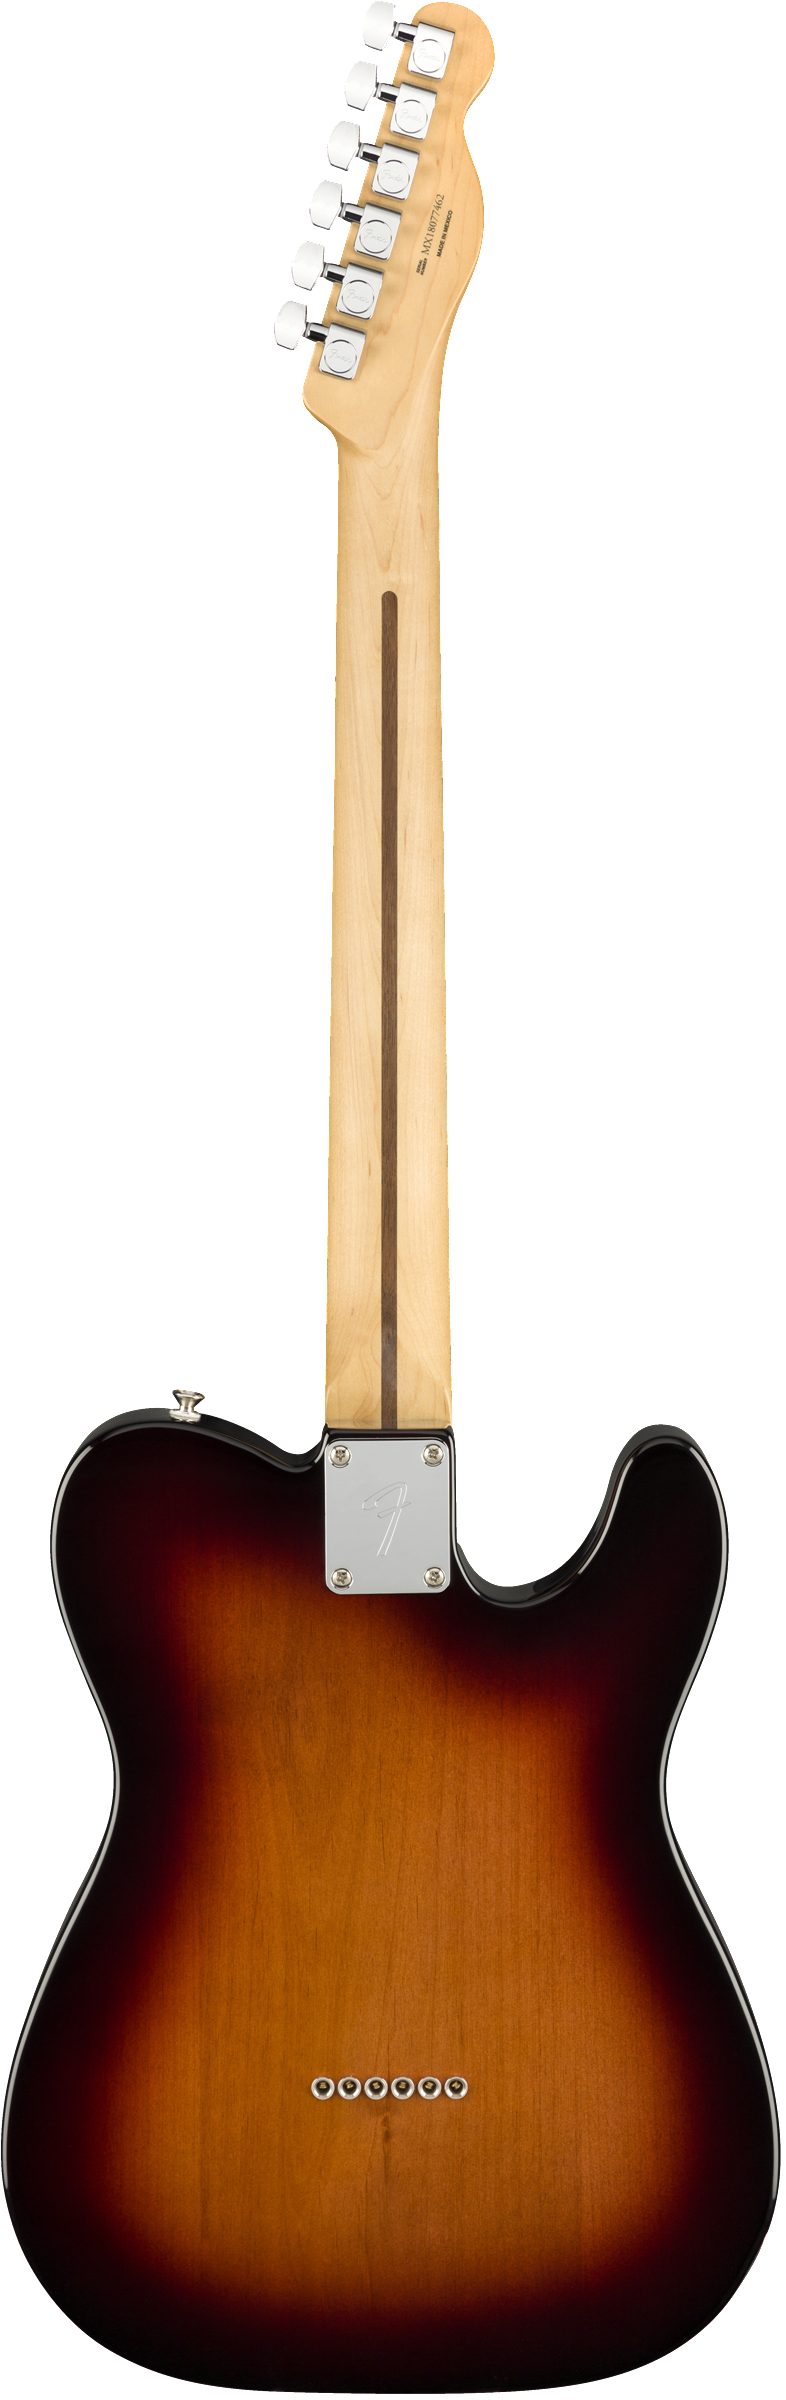 Fender Player Telecaster - Maple Neck - 3-Colour Sunburst - Left-Handed